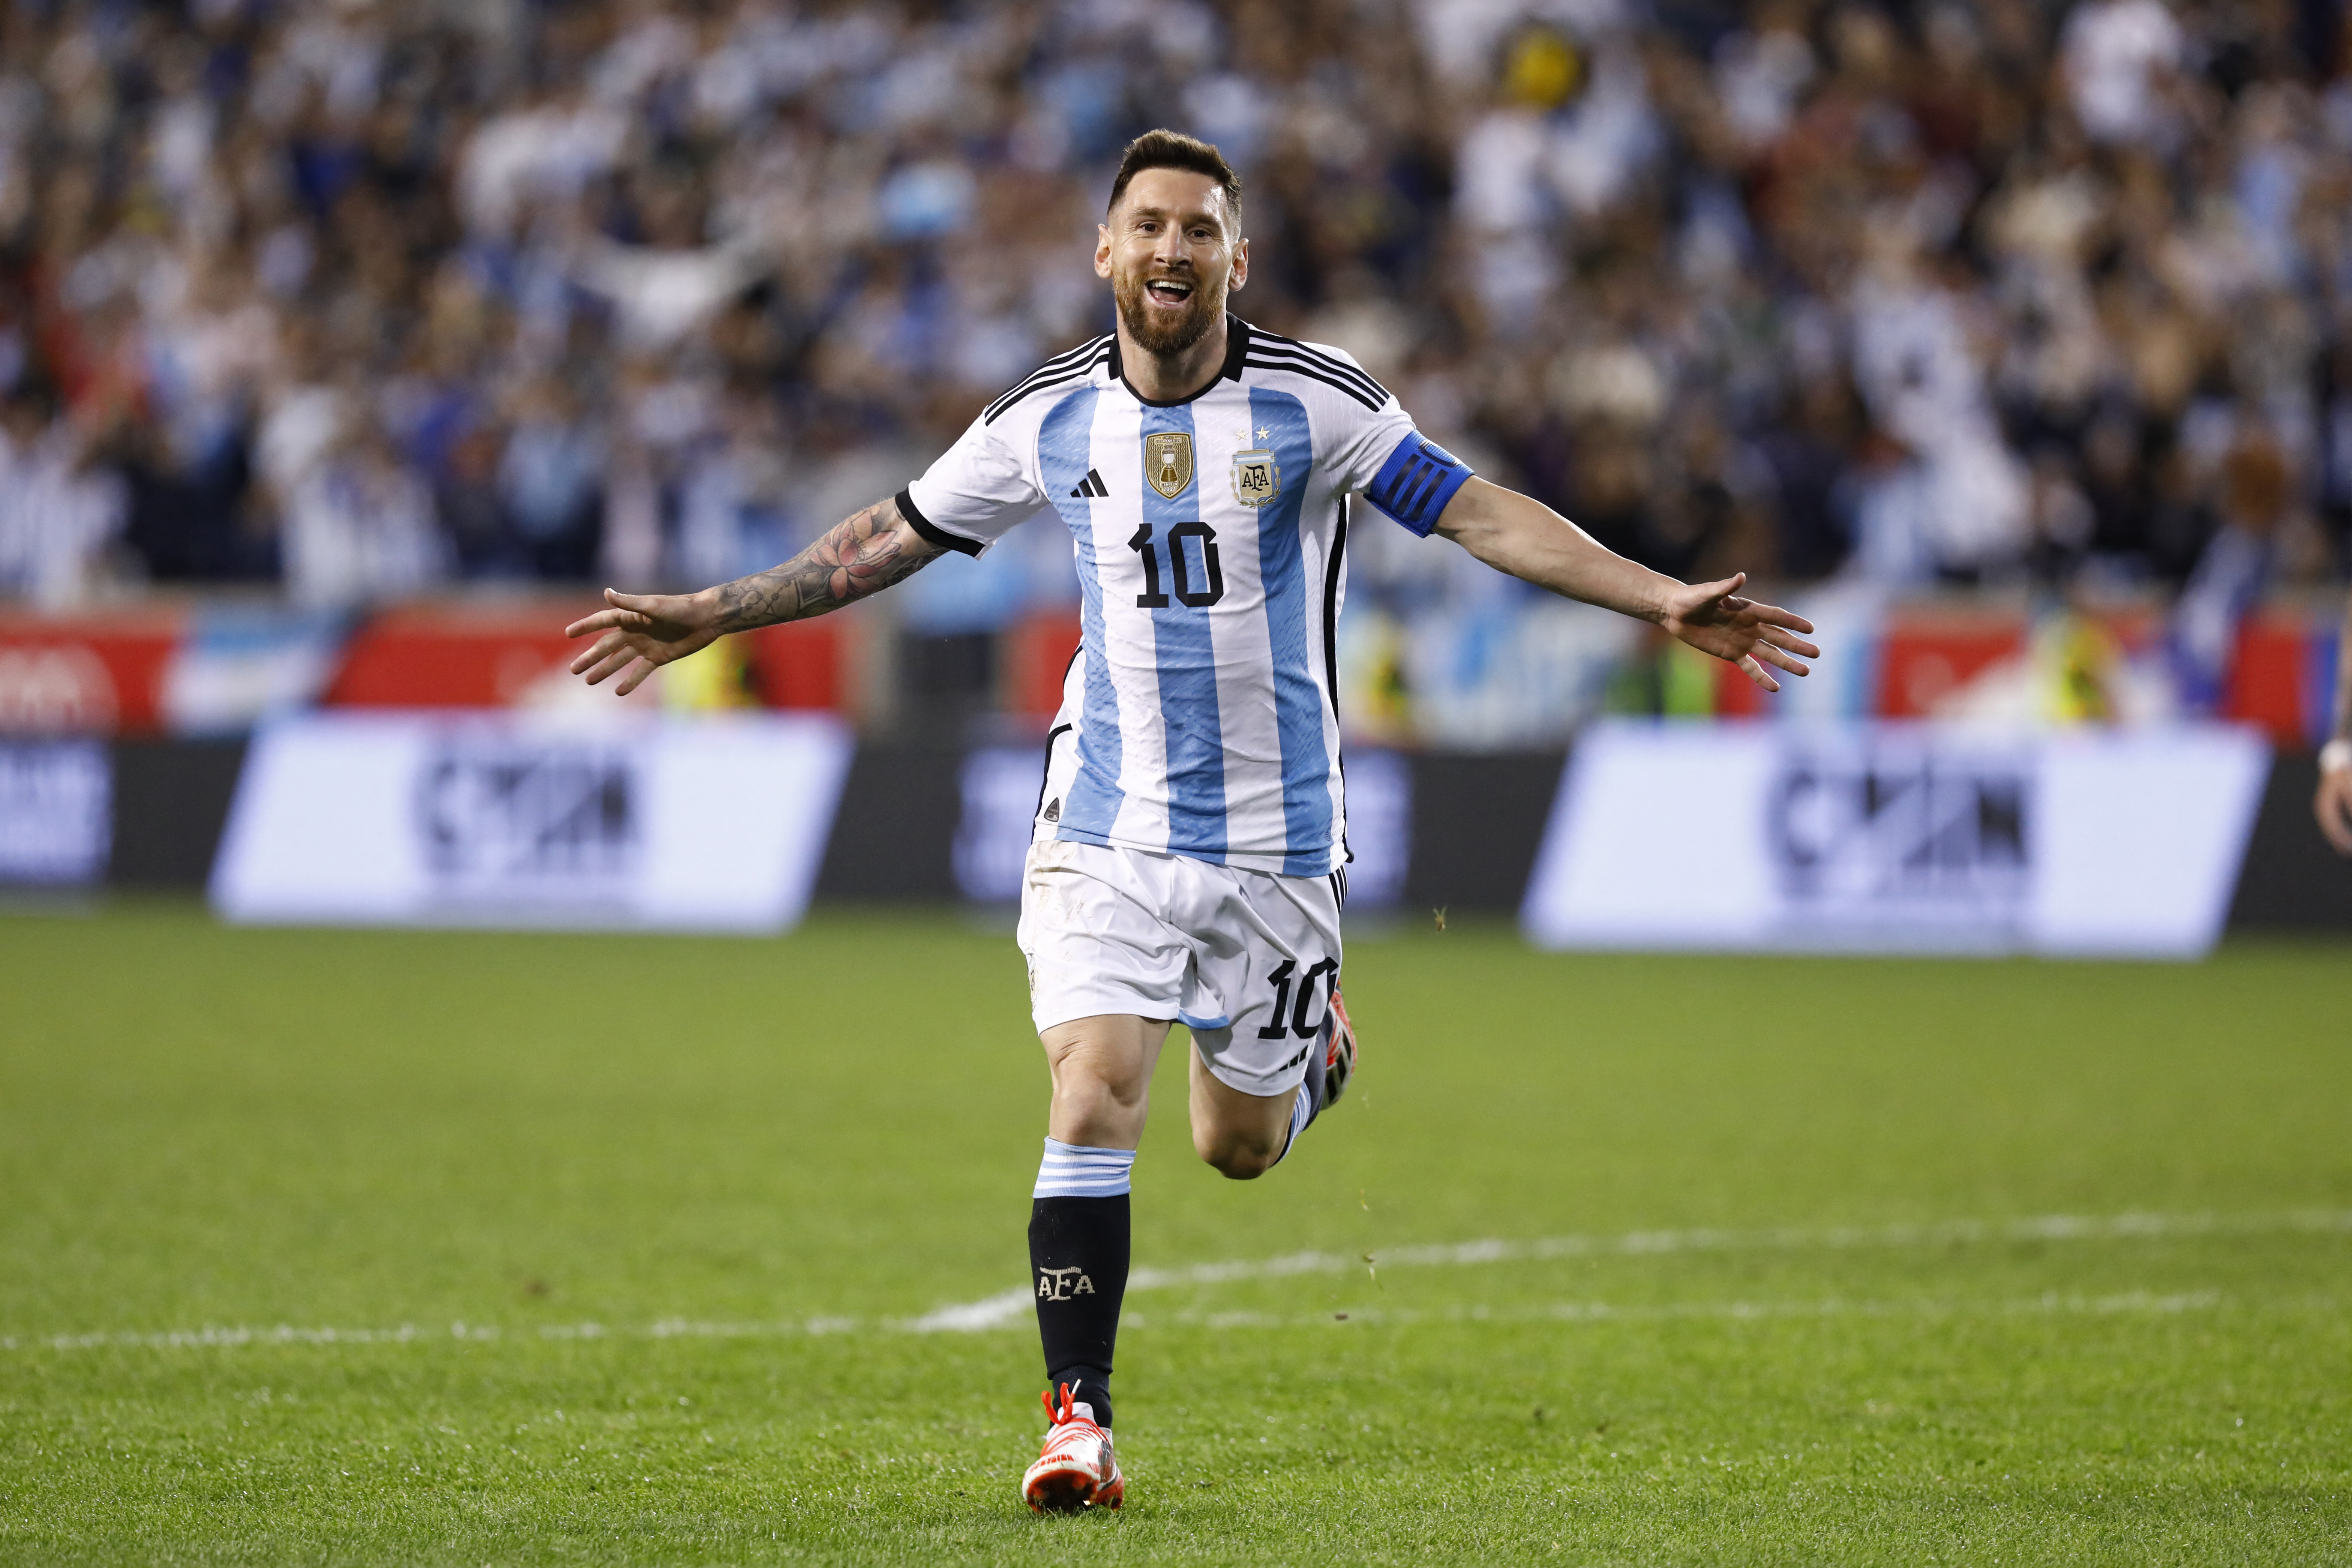 Messi record: Messi đã vừa lập kỷ lục mới trong sự nghiệp của mình. Để được chứng kiến những pha bóng đẳng cấp và những bàn thắng đẹp mắt của Messi, hãy xem hình ảnh mới nhất về cầu thủ này.